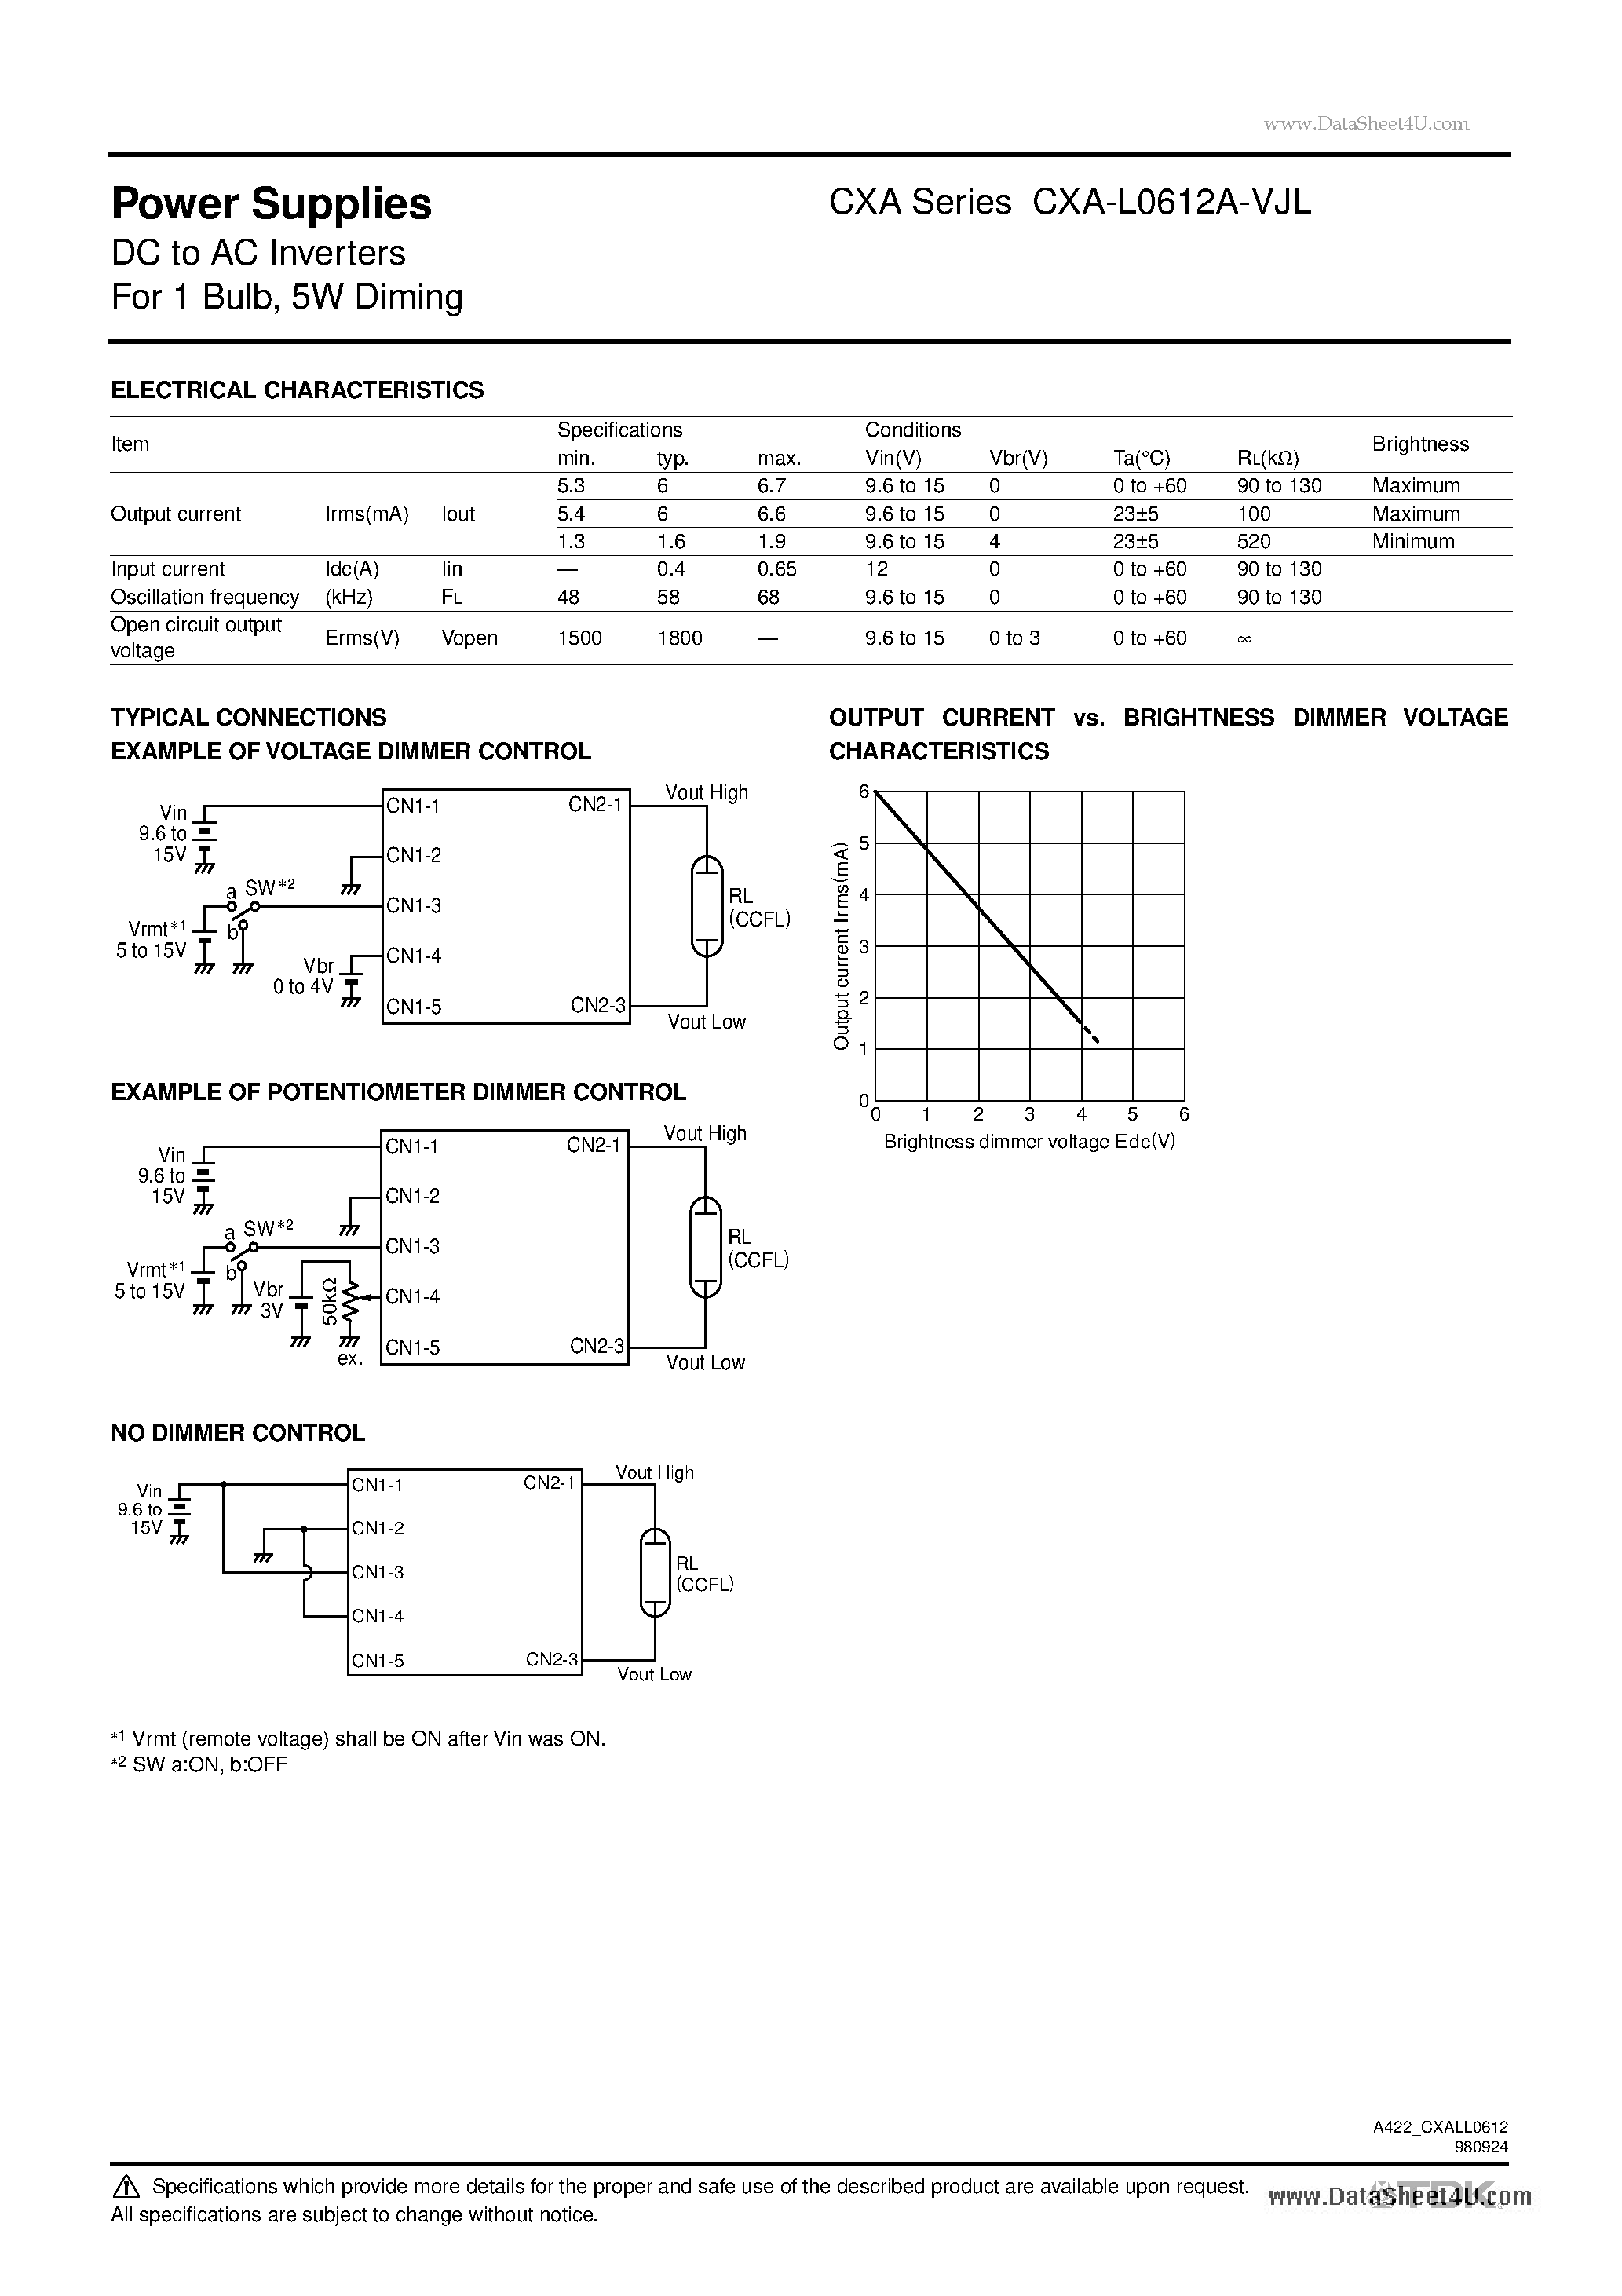 Даташит CXA-L0612A-VJL - Power Supplies DC to AC Inverters страница 2